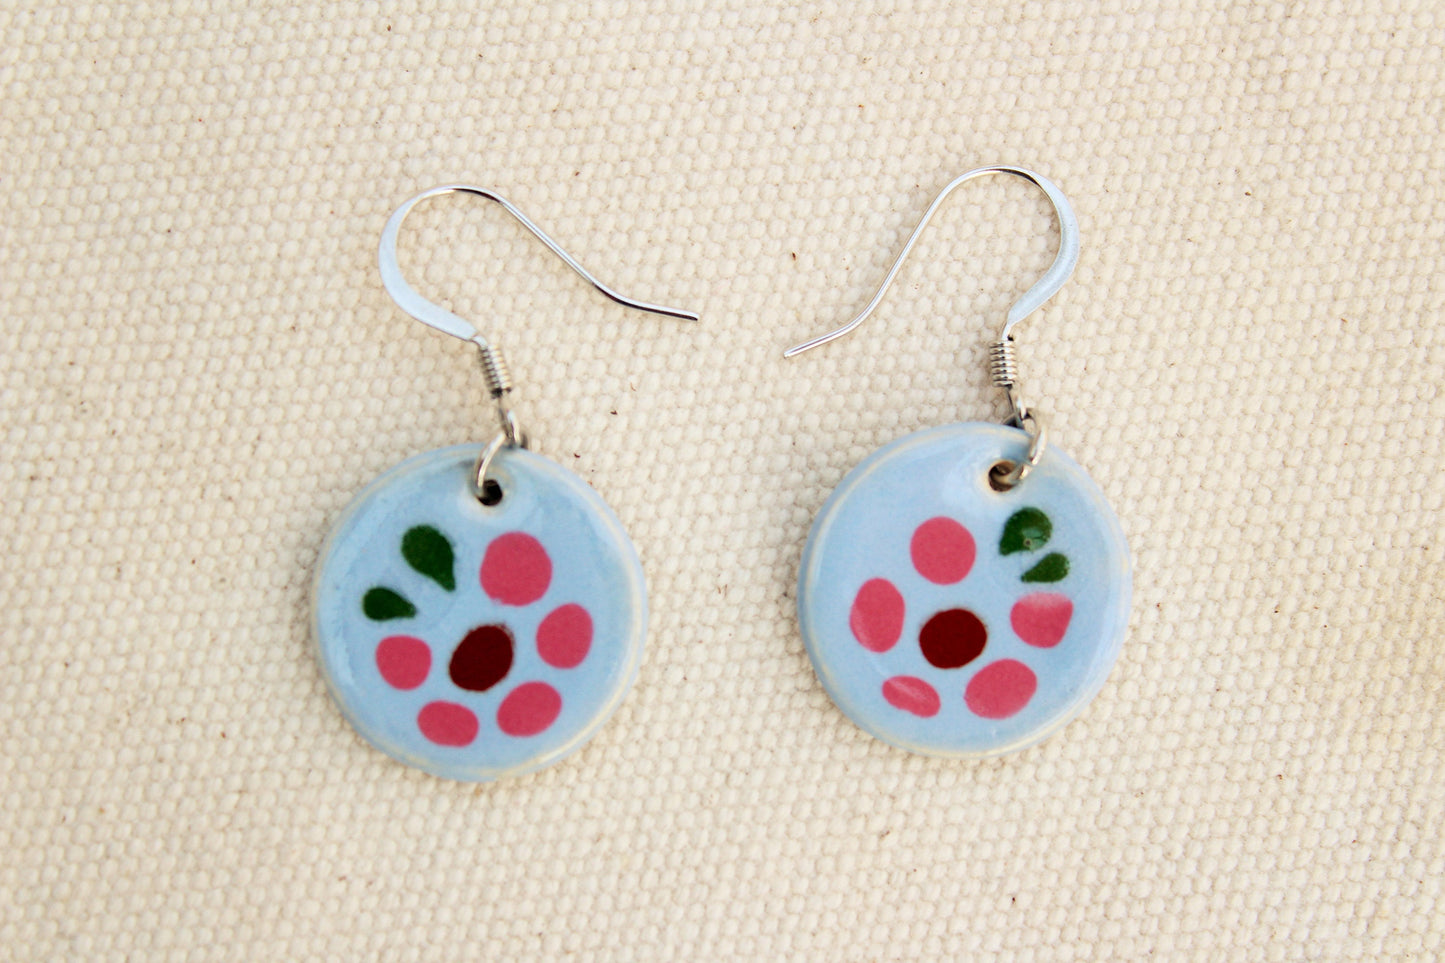 Blue Glazed Ceramic Earrings - Blue Flower Pattern - Blue + Pink